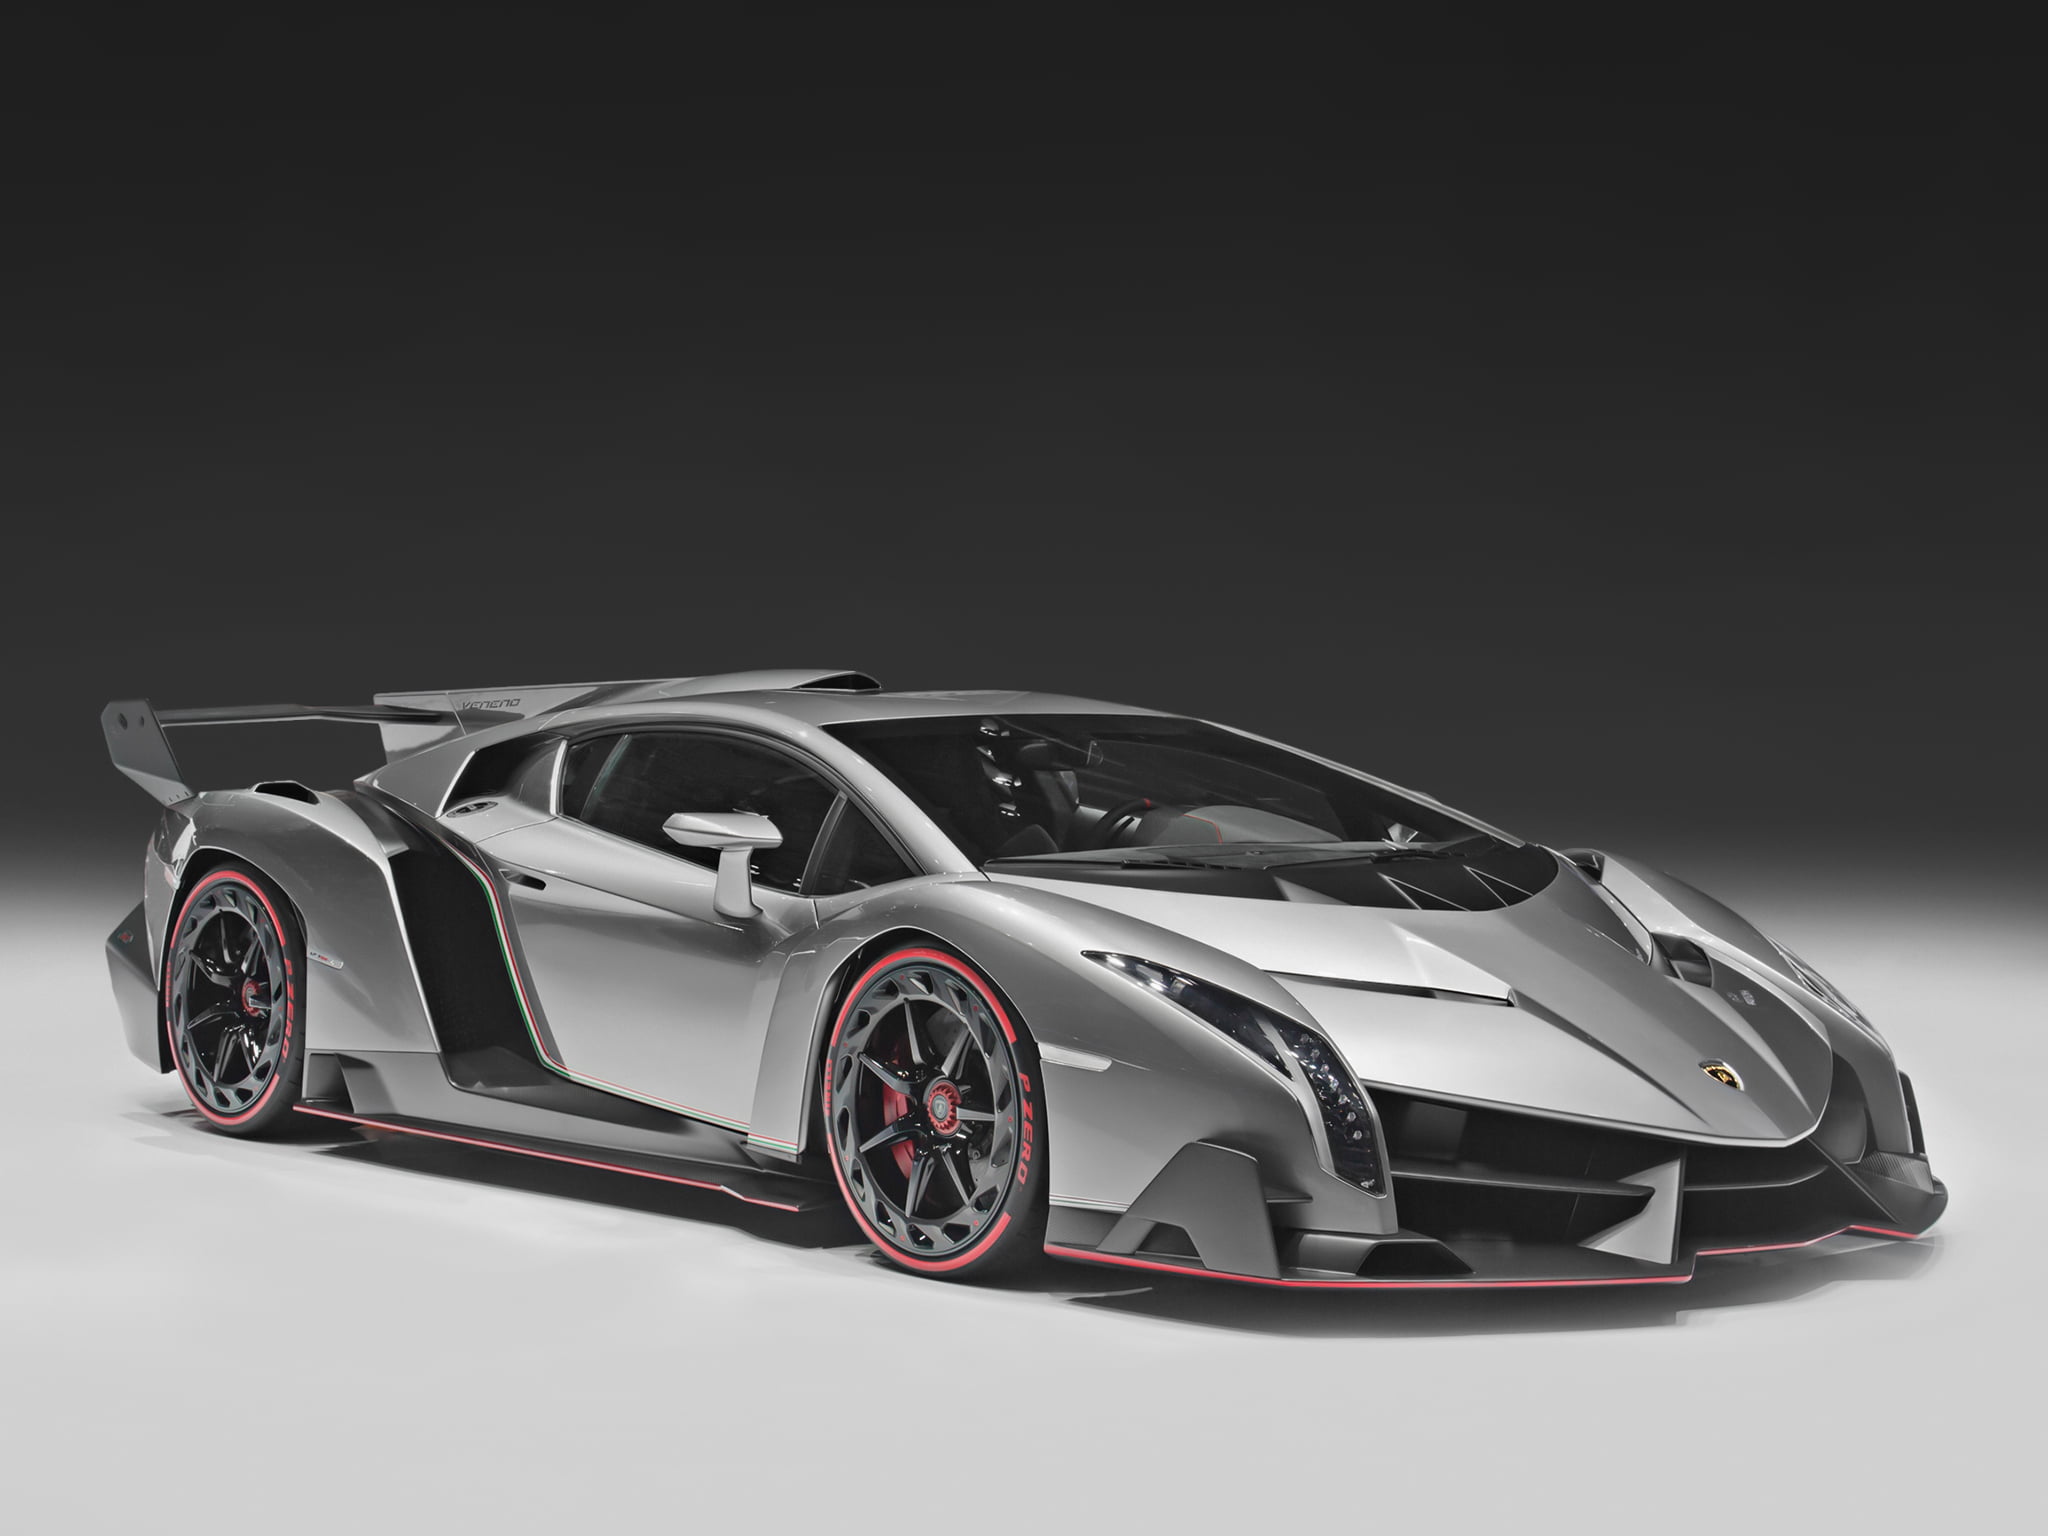 black and gray luxury coupe, Lamborghini, car, supercar, Veneno